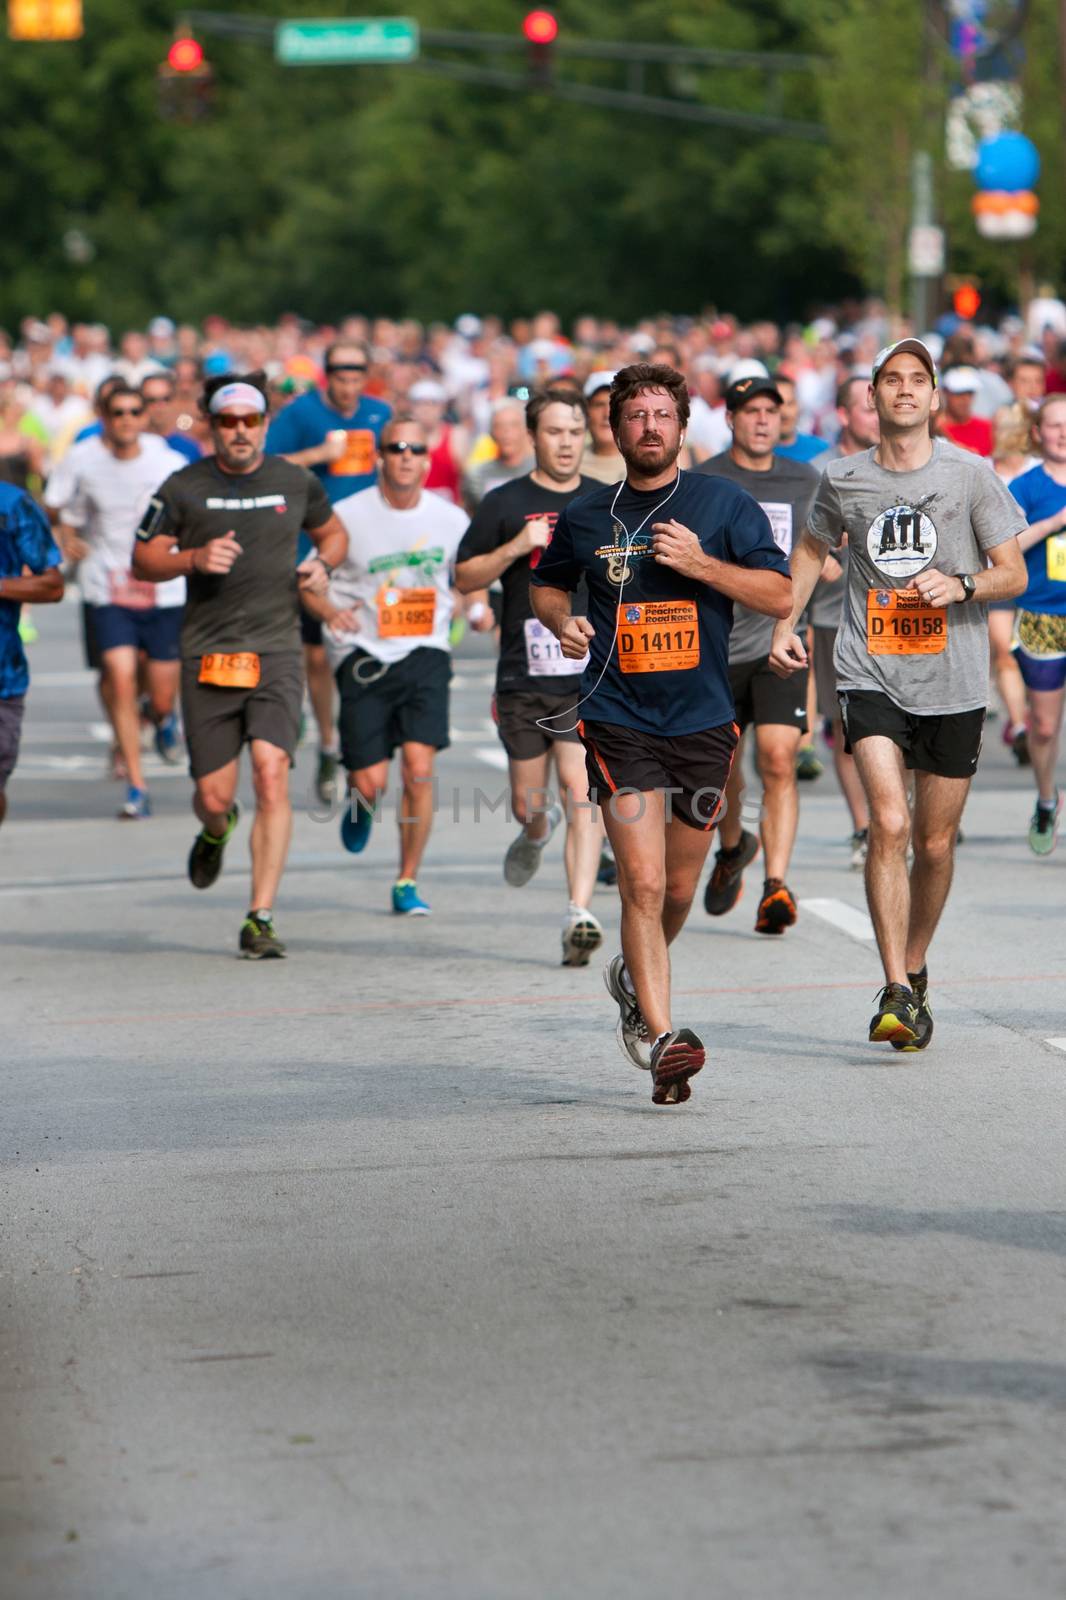 Throng Of Runners Run In July 4 Atlanta Road Race by BluIz60